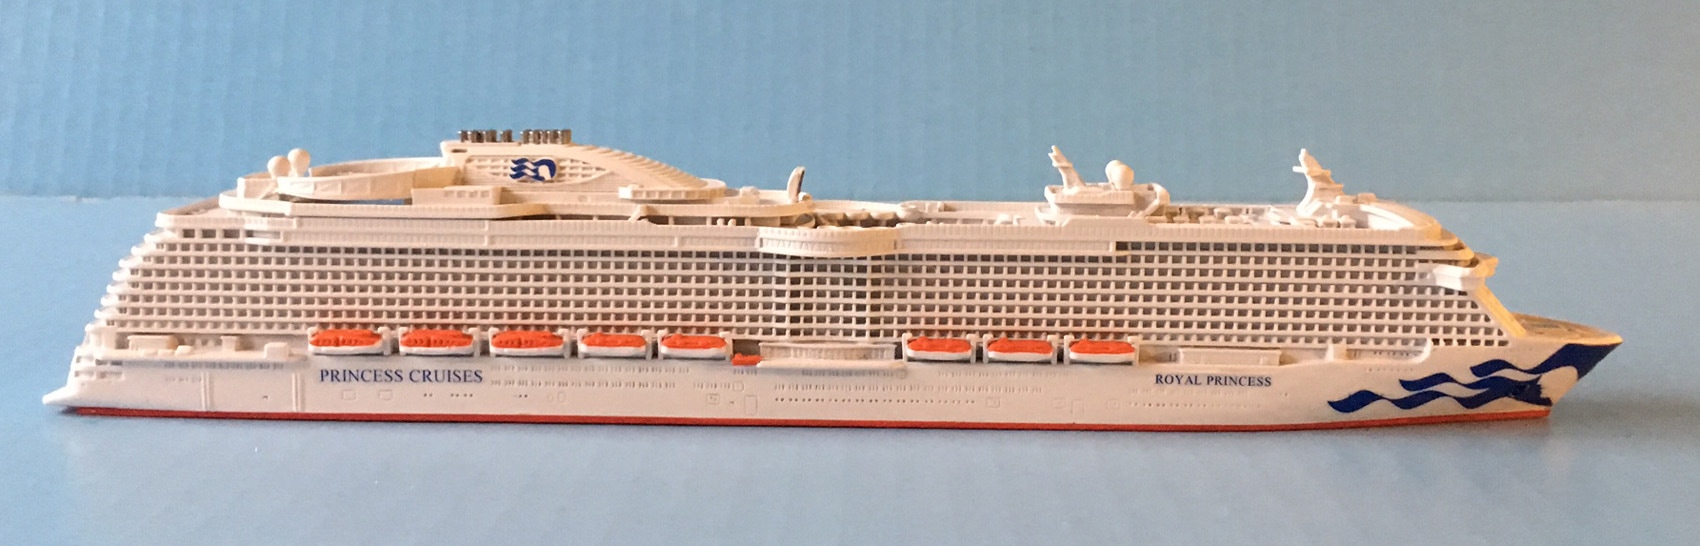 Royal Princess cruise ship model 